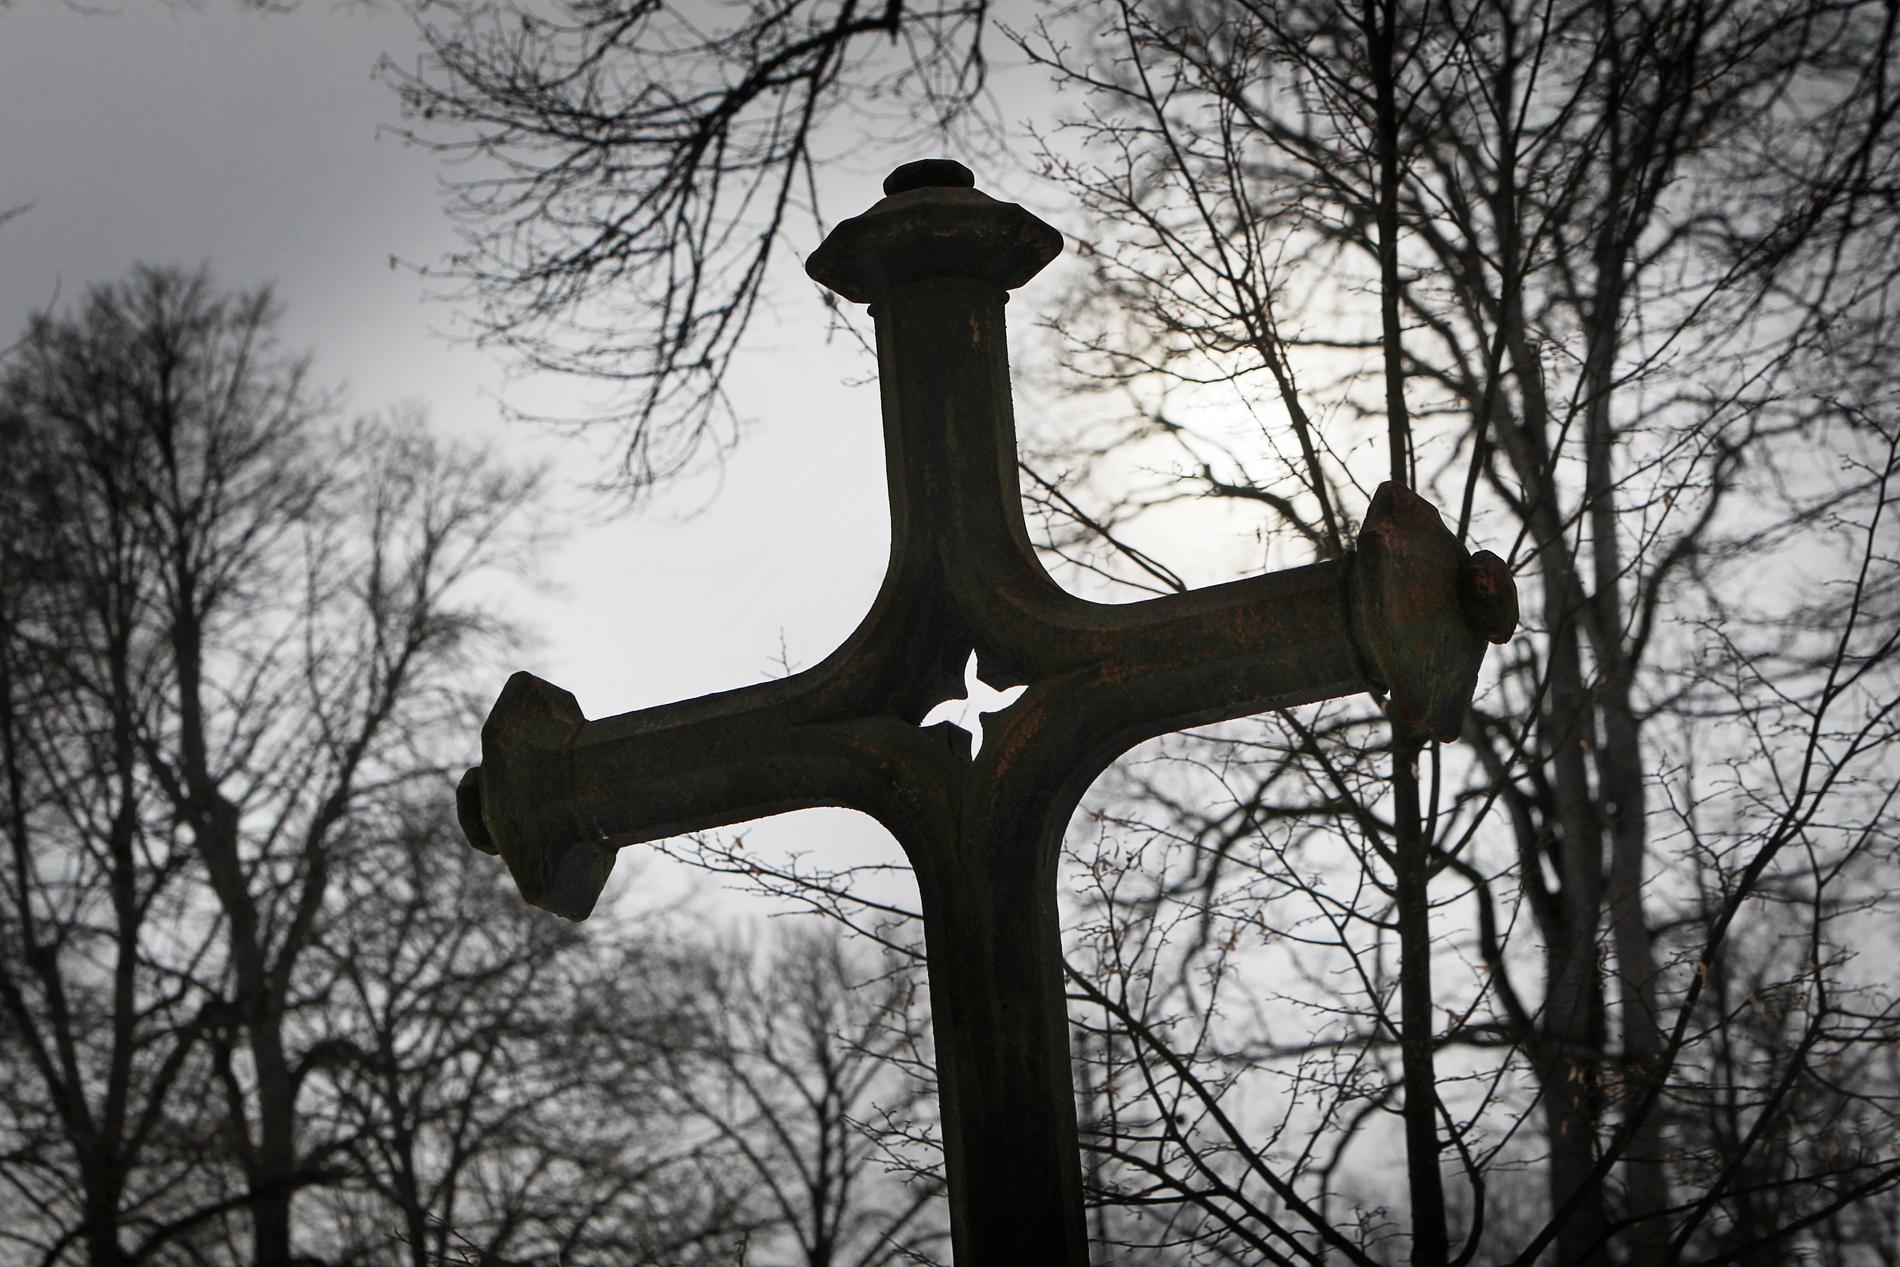 I onsdags upptäcktes att två gravsatta urnor försvunnit från en kyrkogård i sydöstra Skåne. Stölden kopplas samman med den senaste tidens metallstölder på kyrkogårdar i området. Arkivbild.